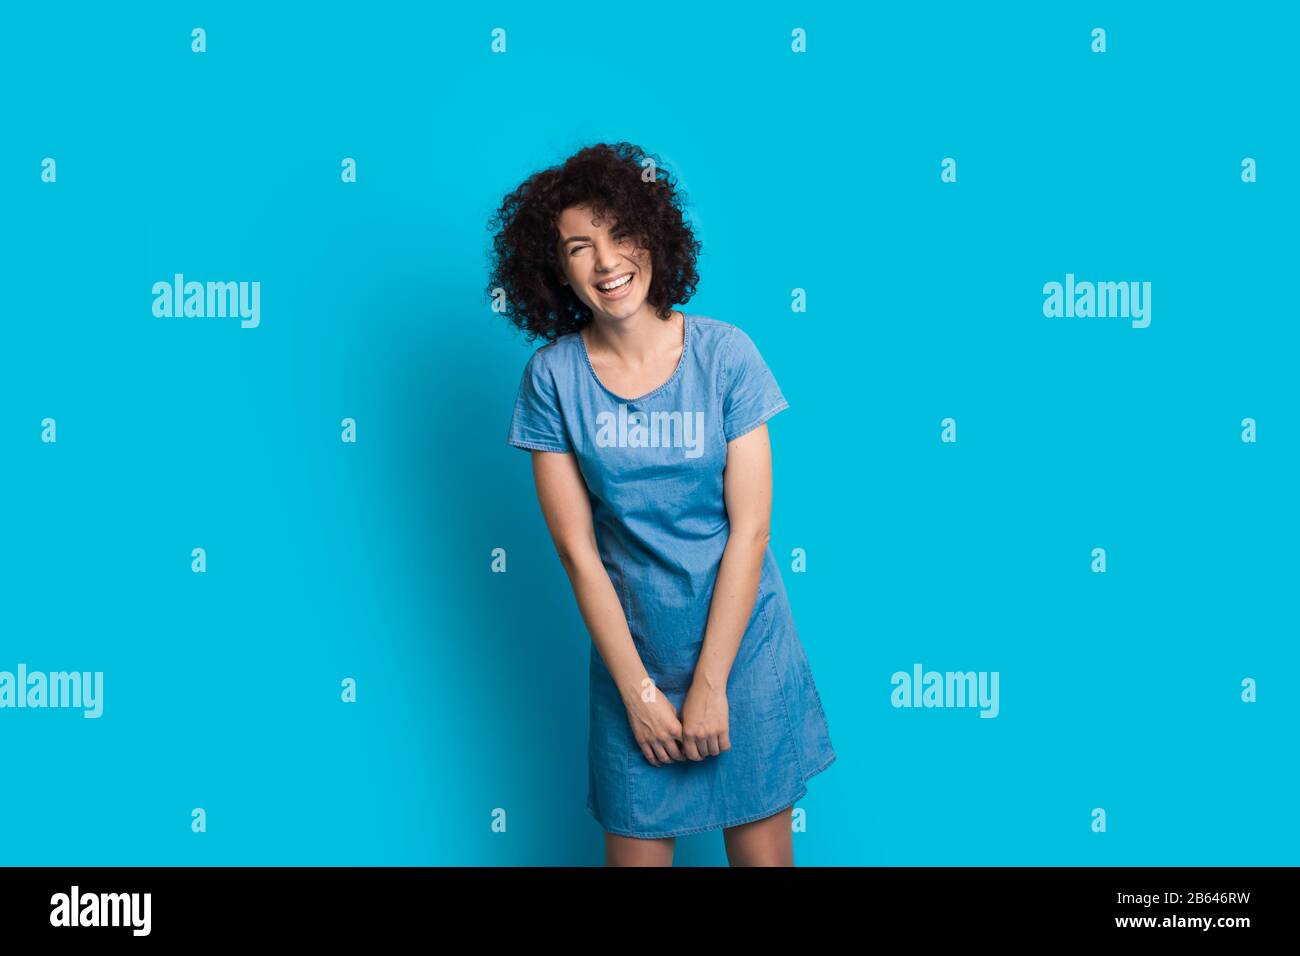 Une femme caucasienne aux cheveux bouclés se posant dans une jolie robe sur un fond bleu tout en souriant chaleureusement Banque D'Images